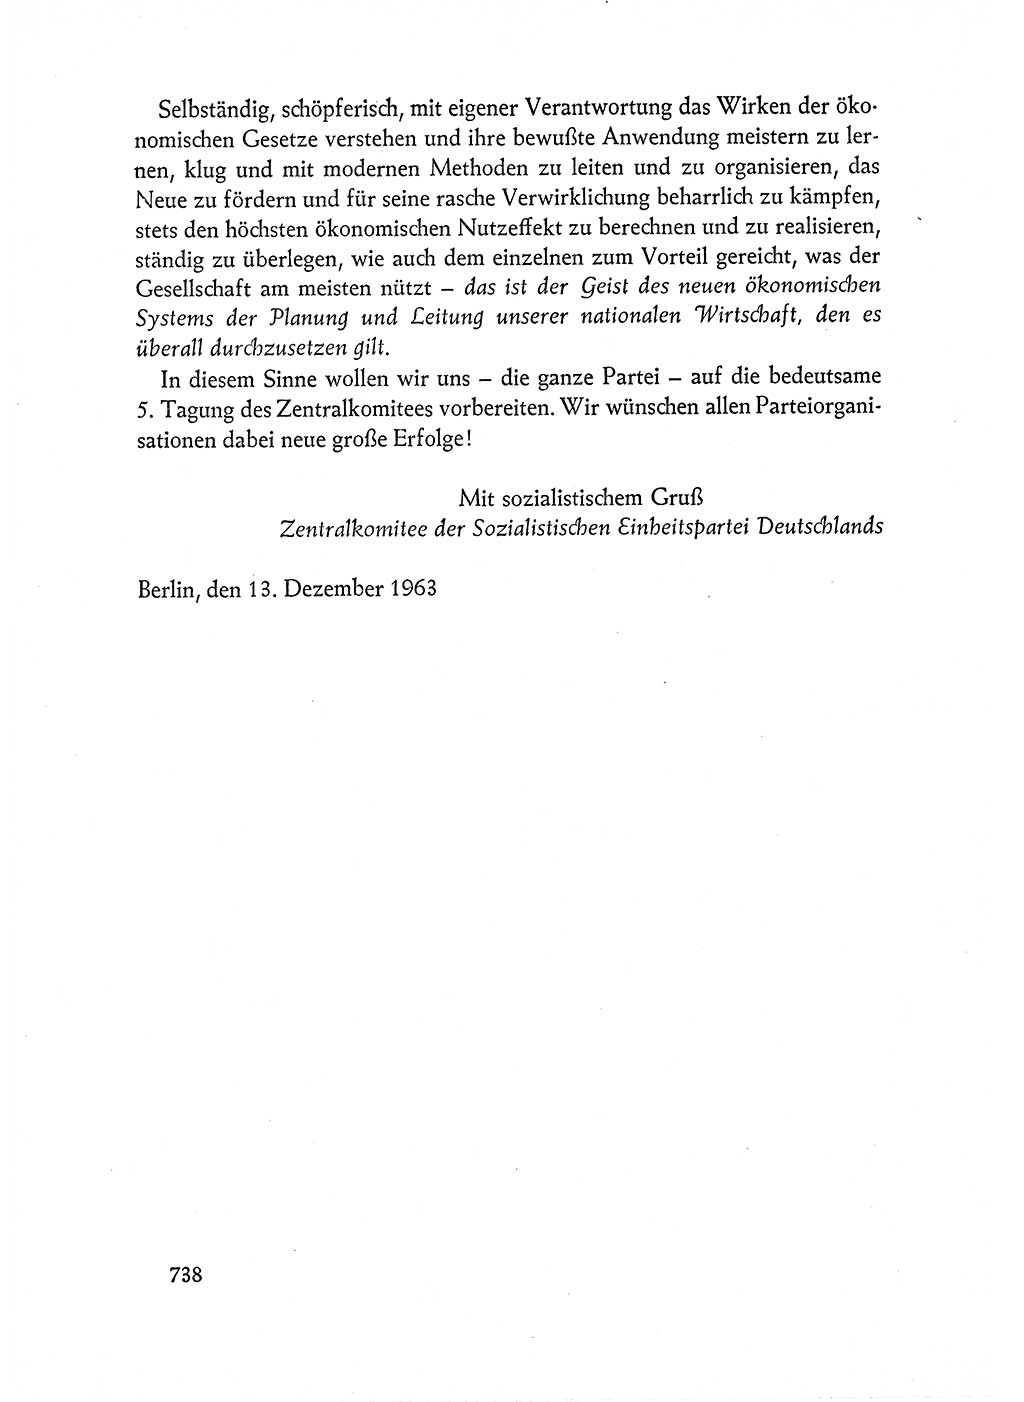 Dokumente der Sozialistischen Einheitspartei Deutschlands (SED) [Deutsche Demokratische Republik (DDR)] 1962-1963, Seite 738 (Dok. SED DDR 1962-1963, S. 738)